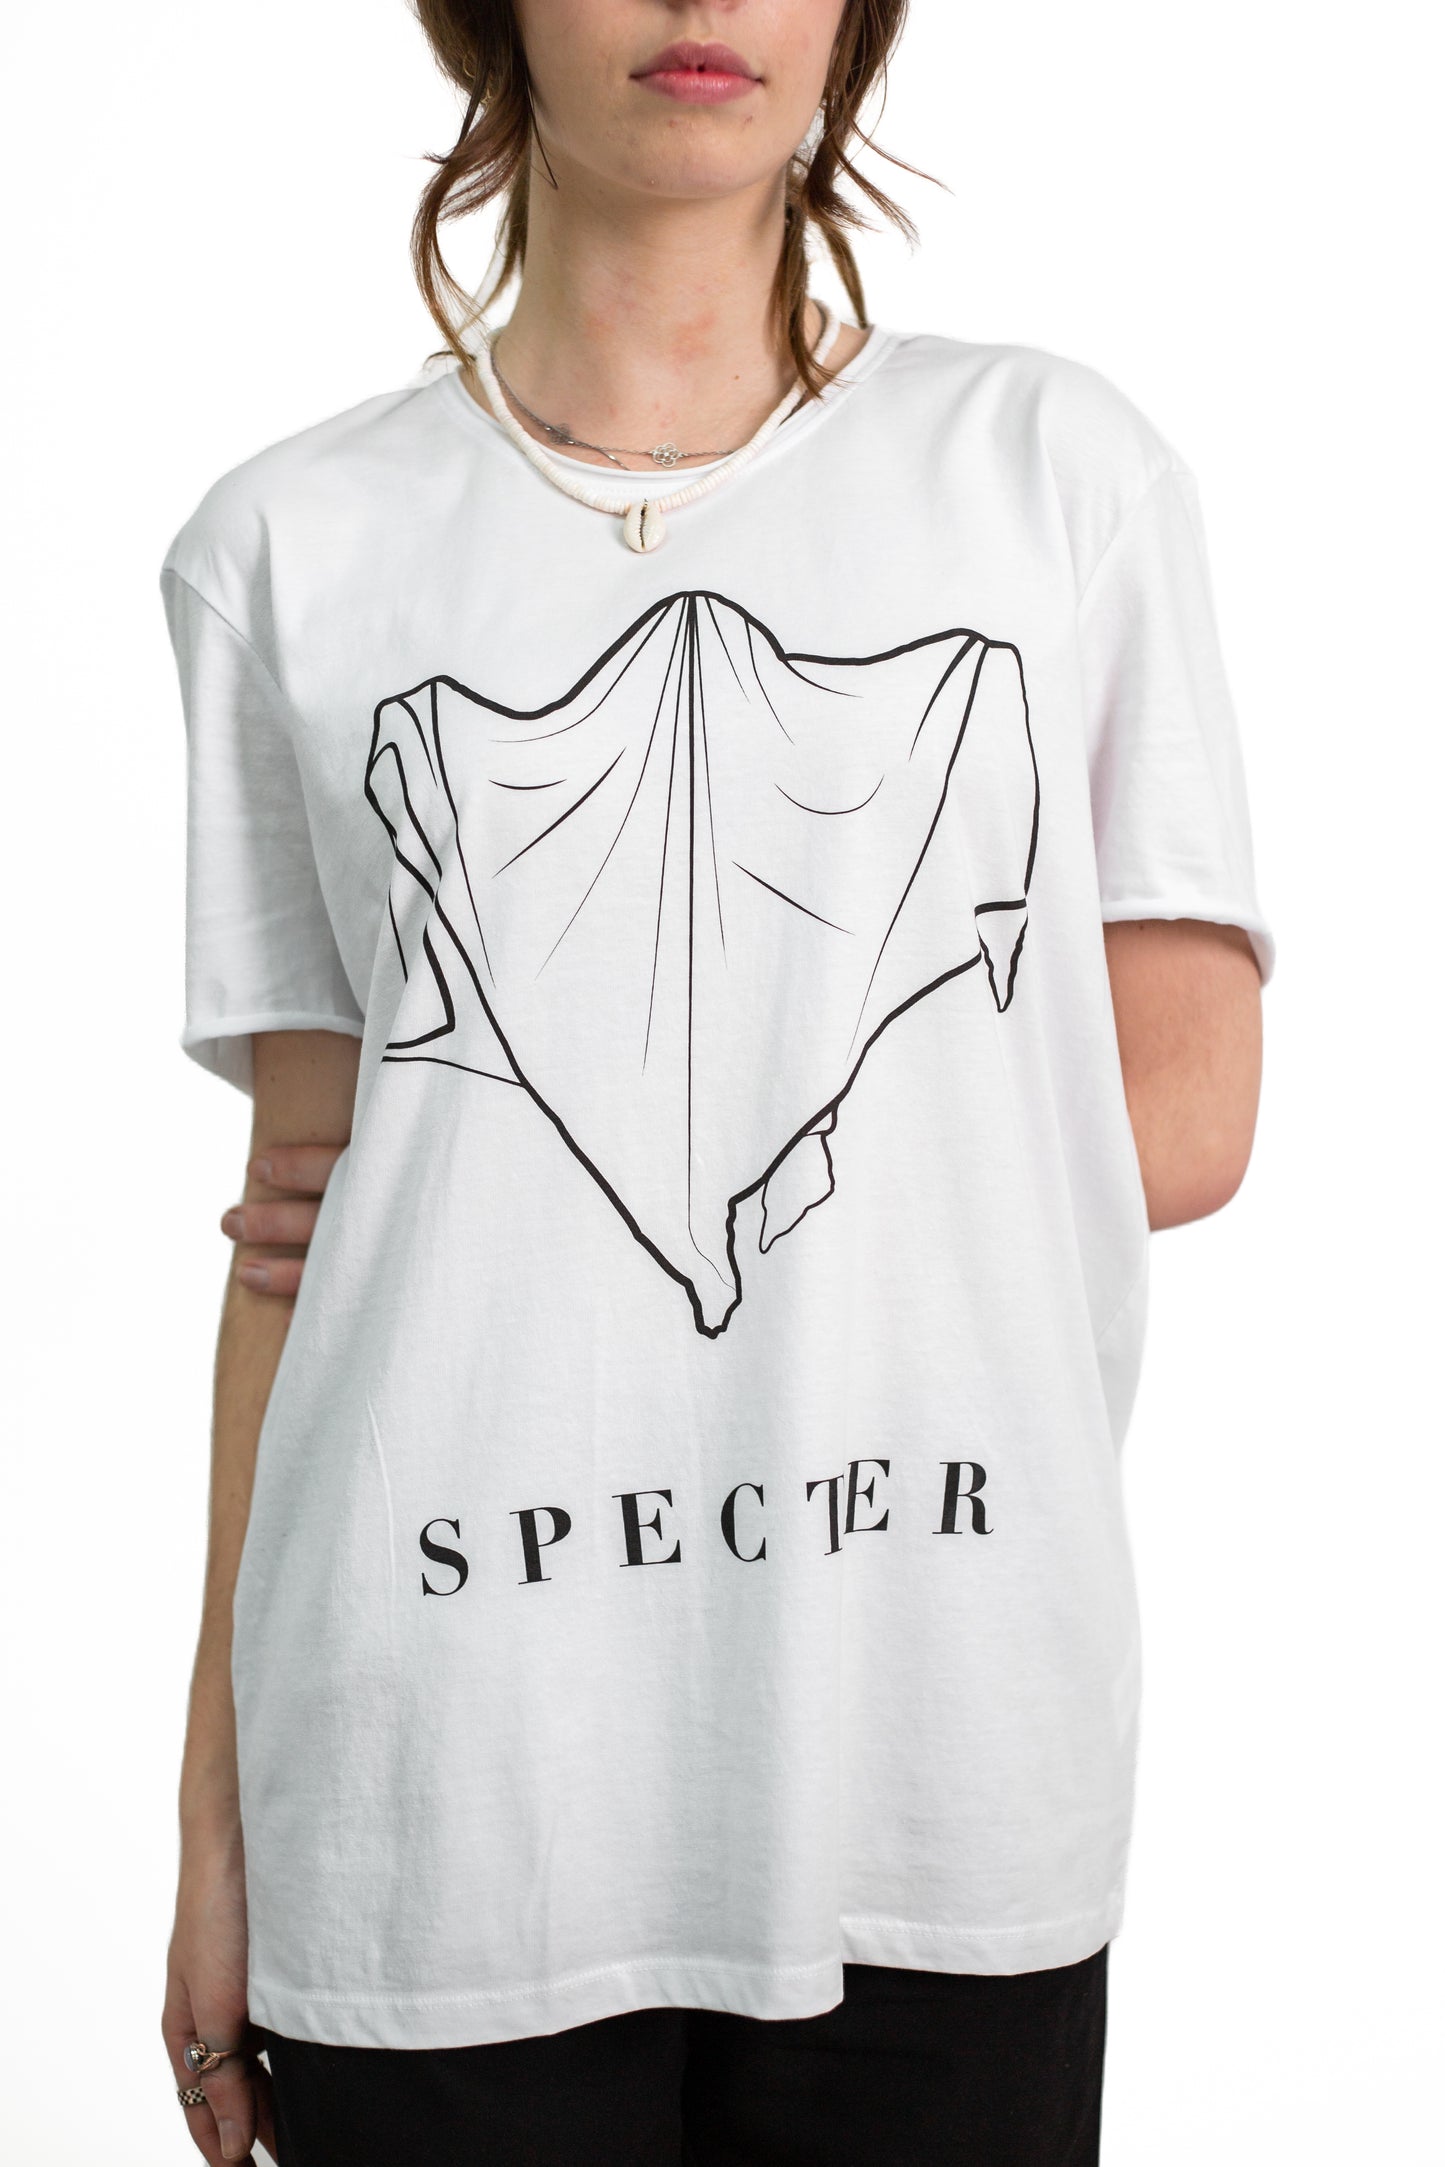 Specter T-Shirt (White)